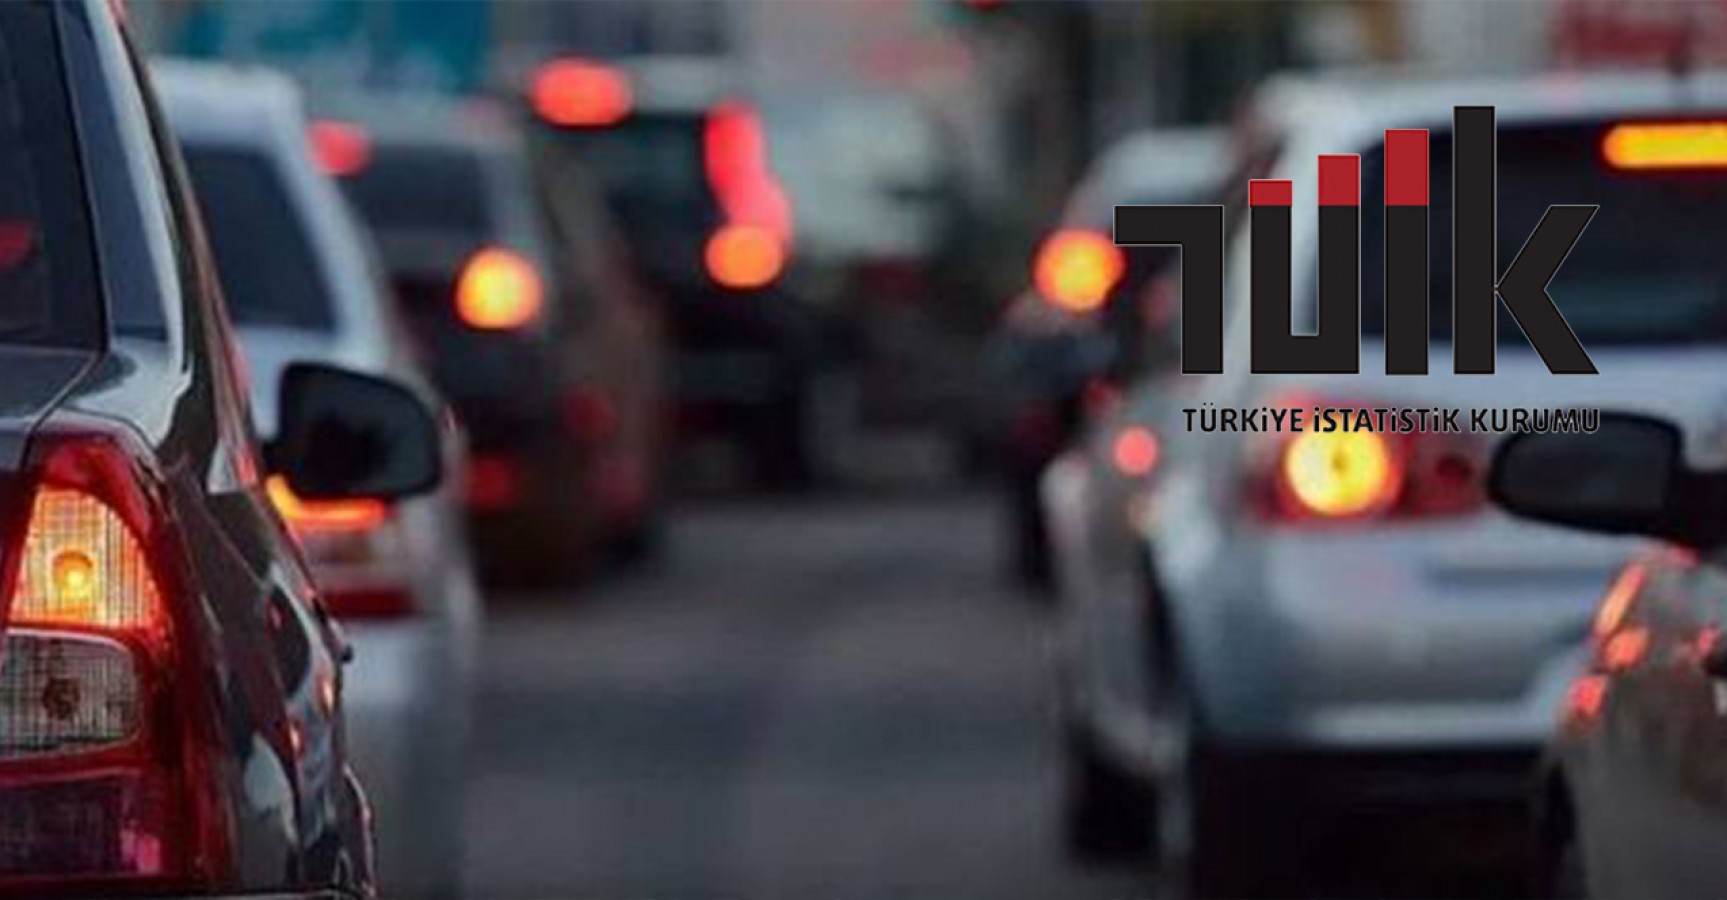 Urfa’da trafiğe kayıtlı kaç araç var?;